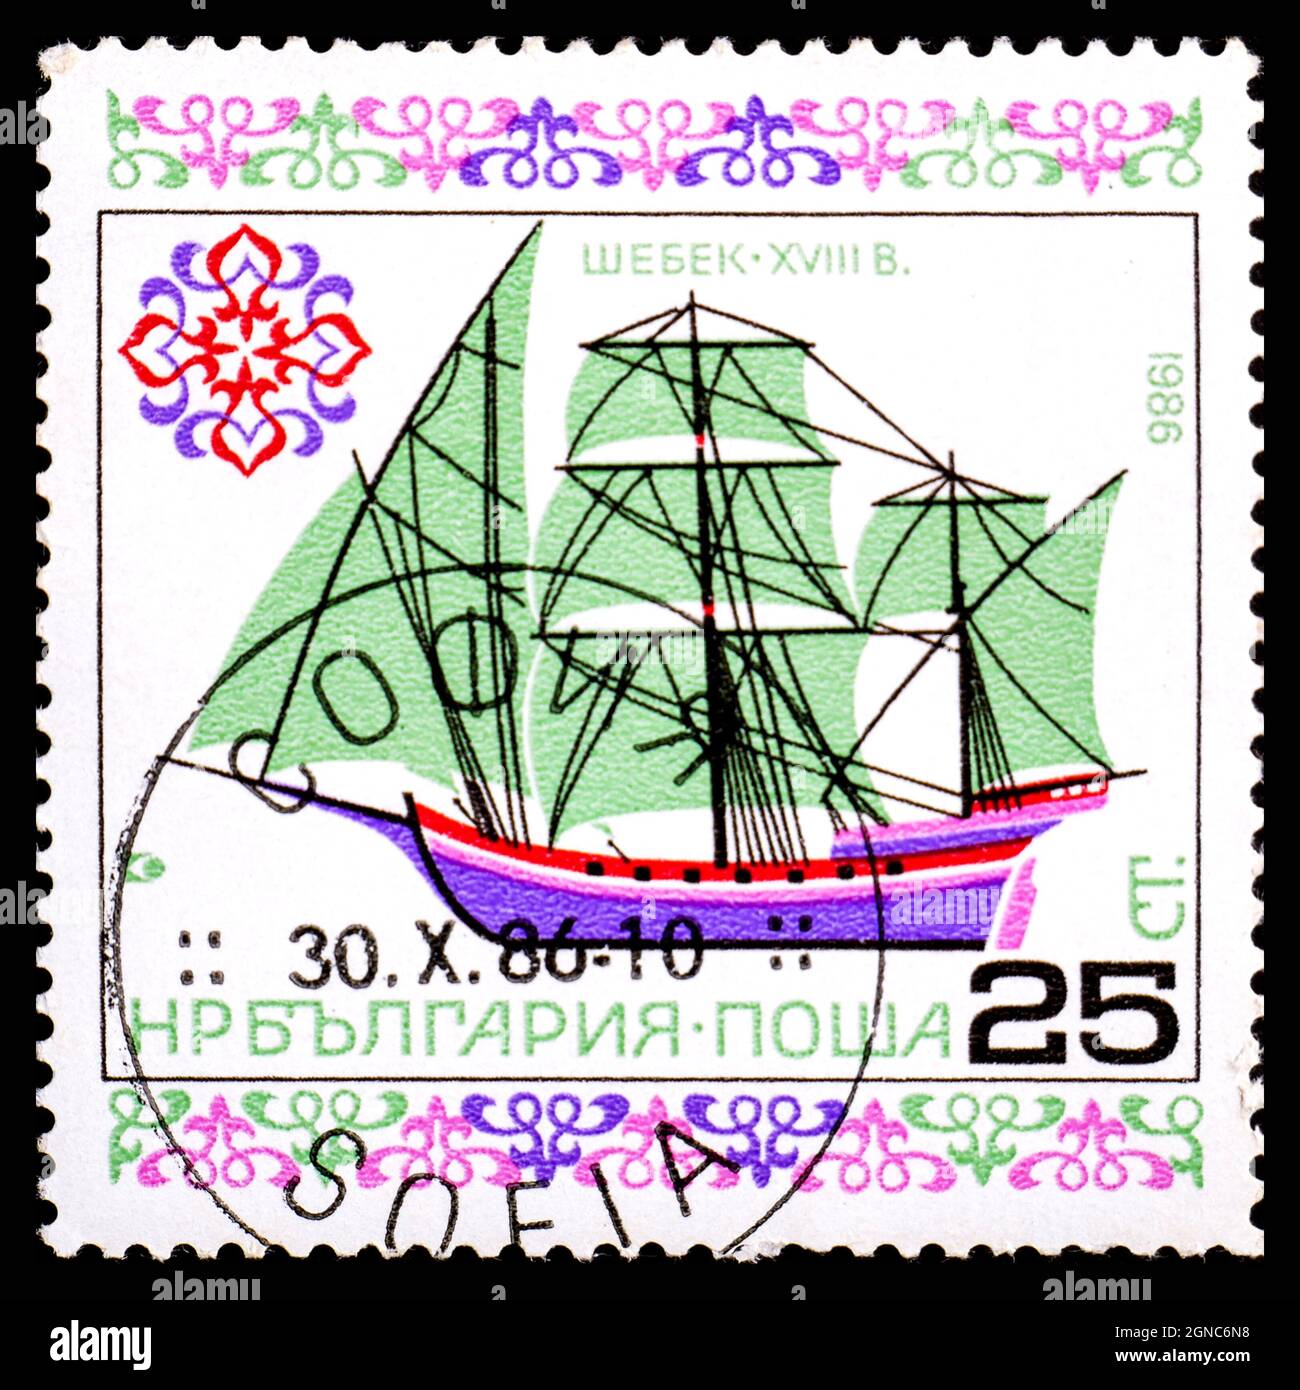 BULGARIA - ALREDEDOR de 1986: Un sello impreso en Bulgaria muestra la imagen de un barco de vela Foto de stock